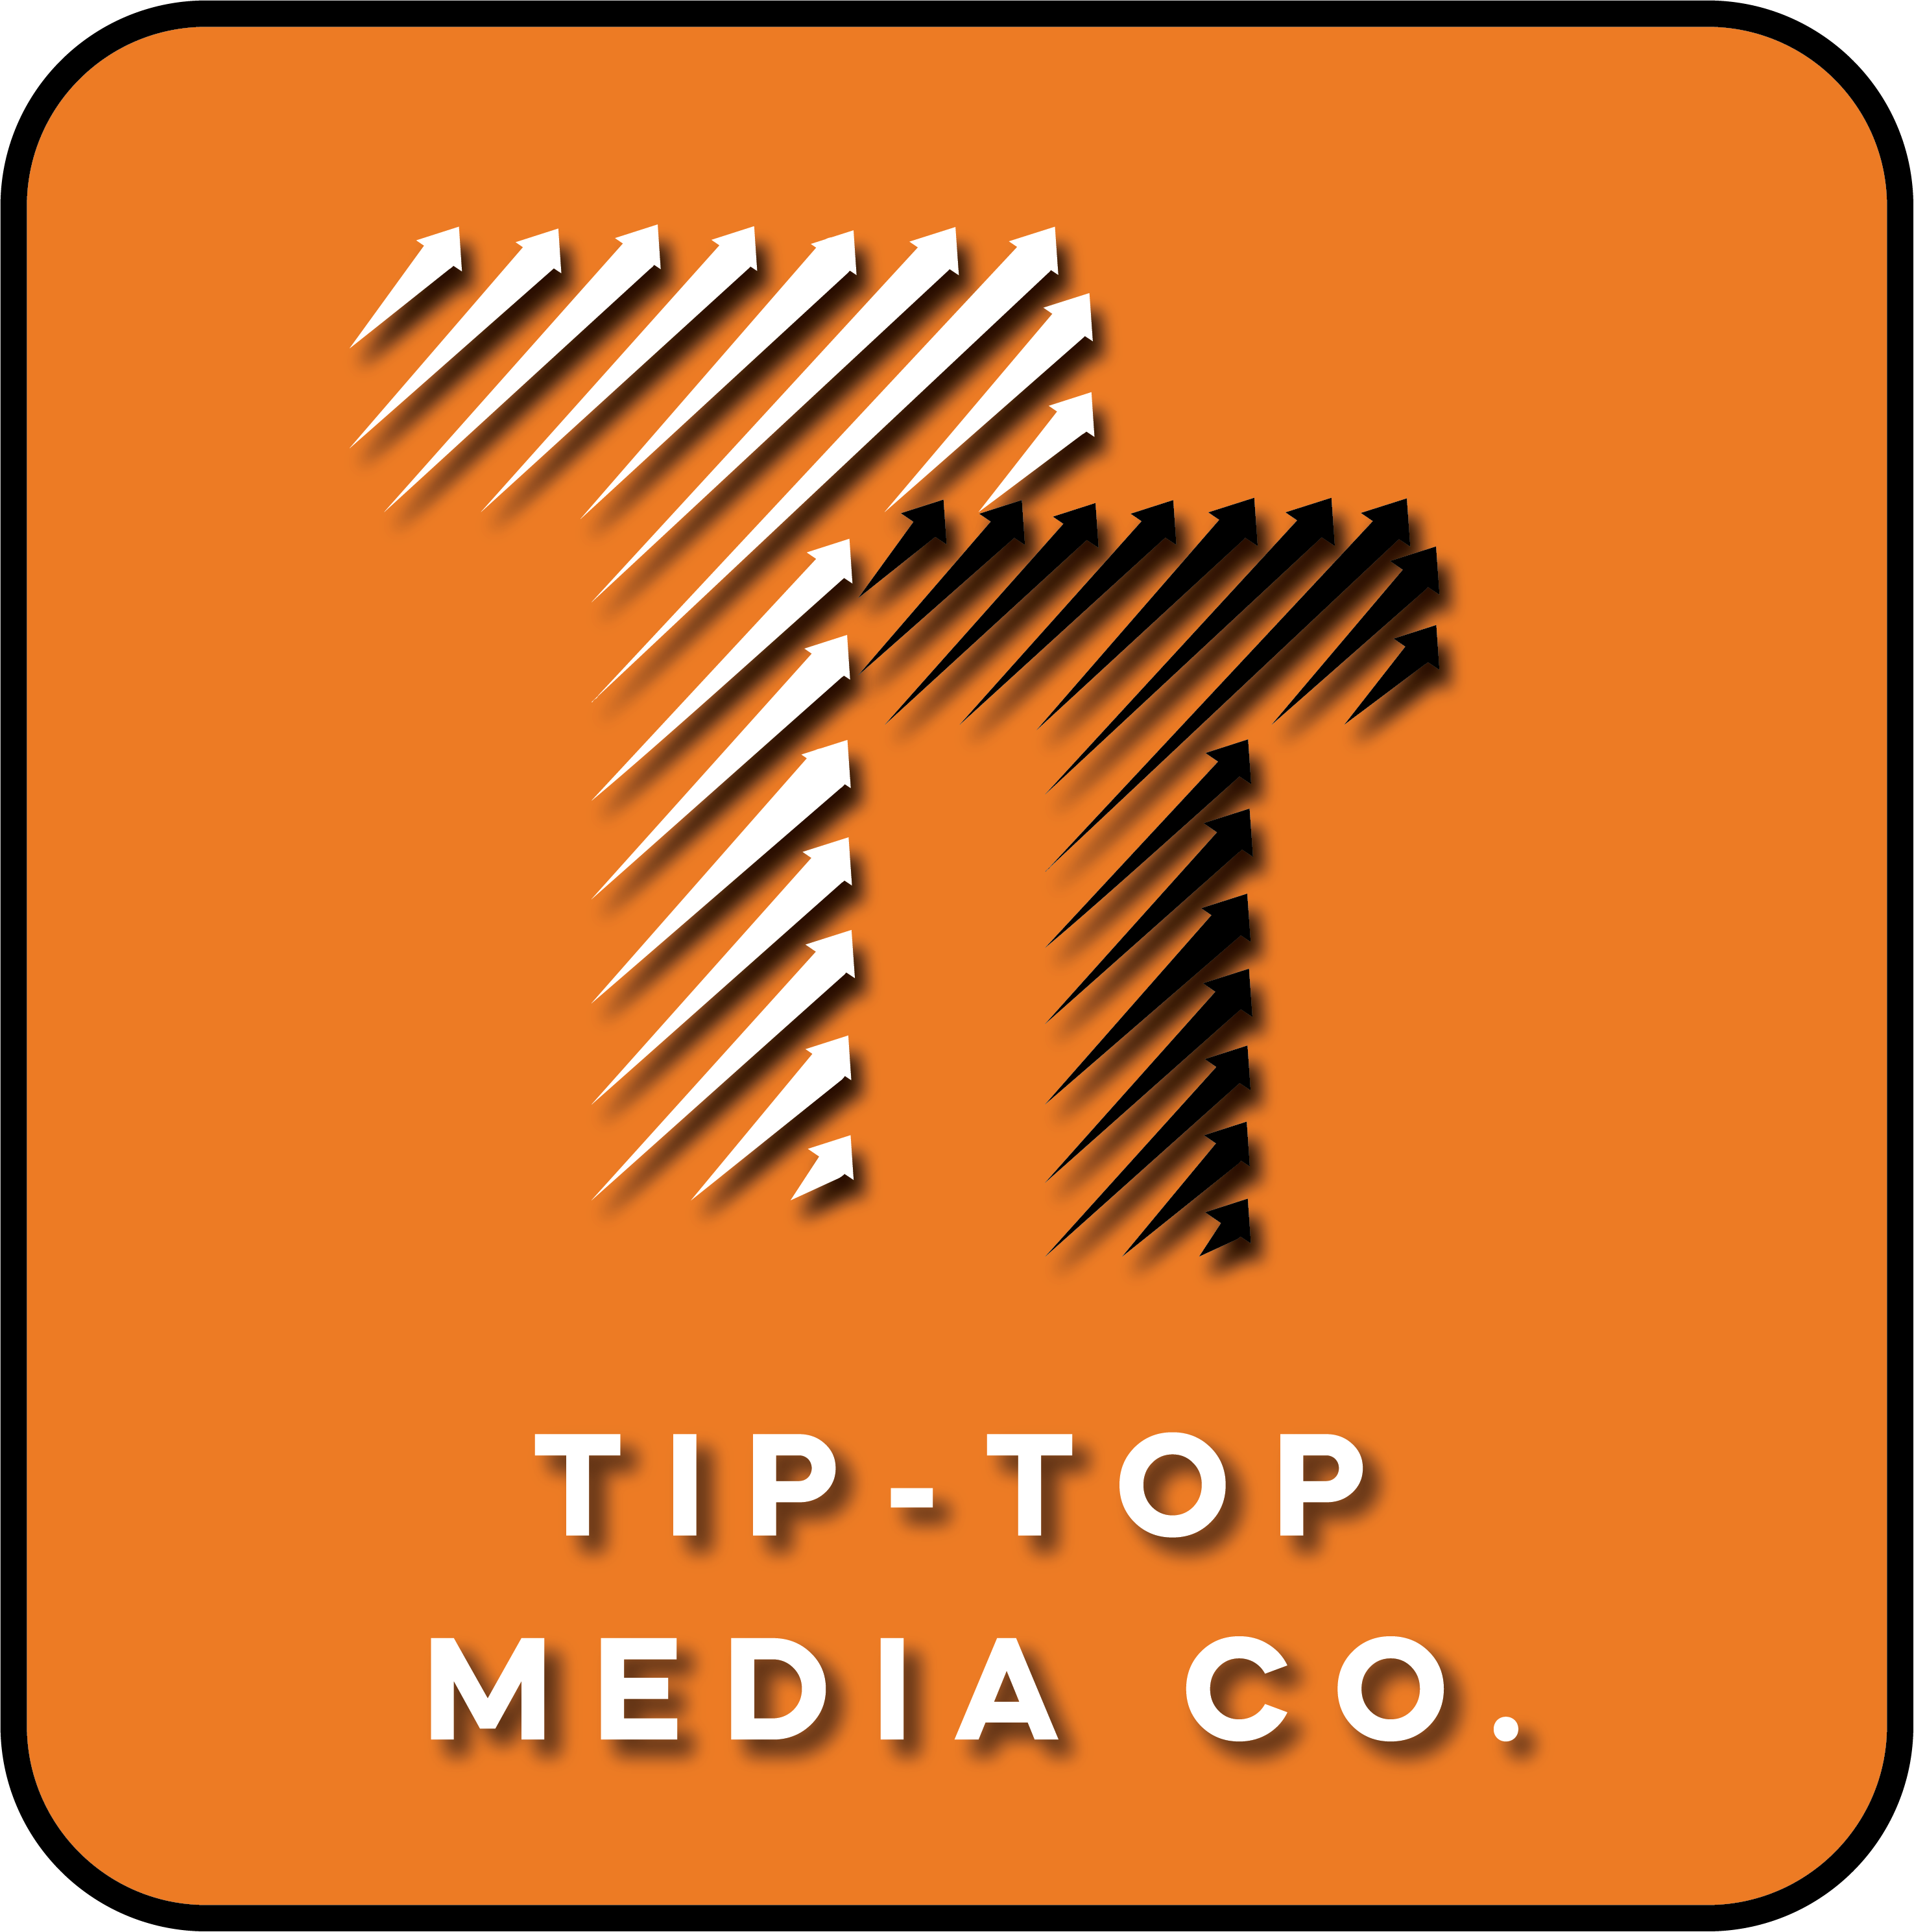 Tip-Top Media Co.